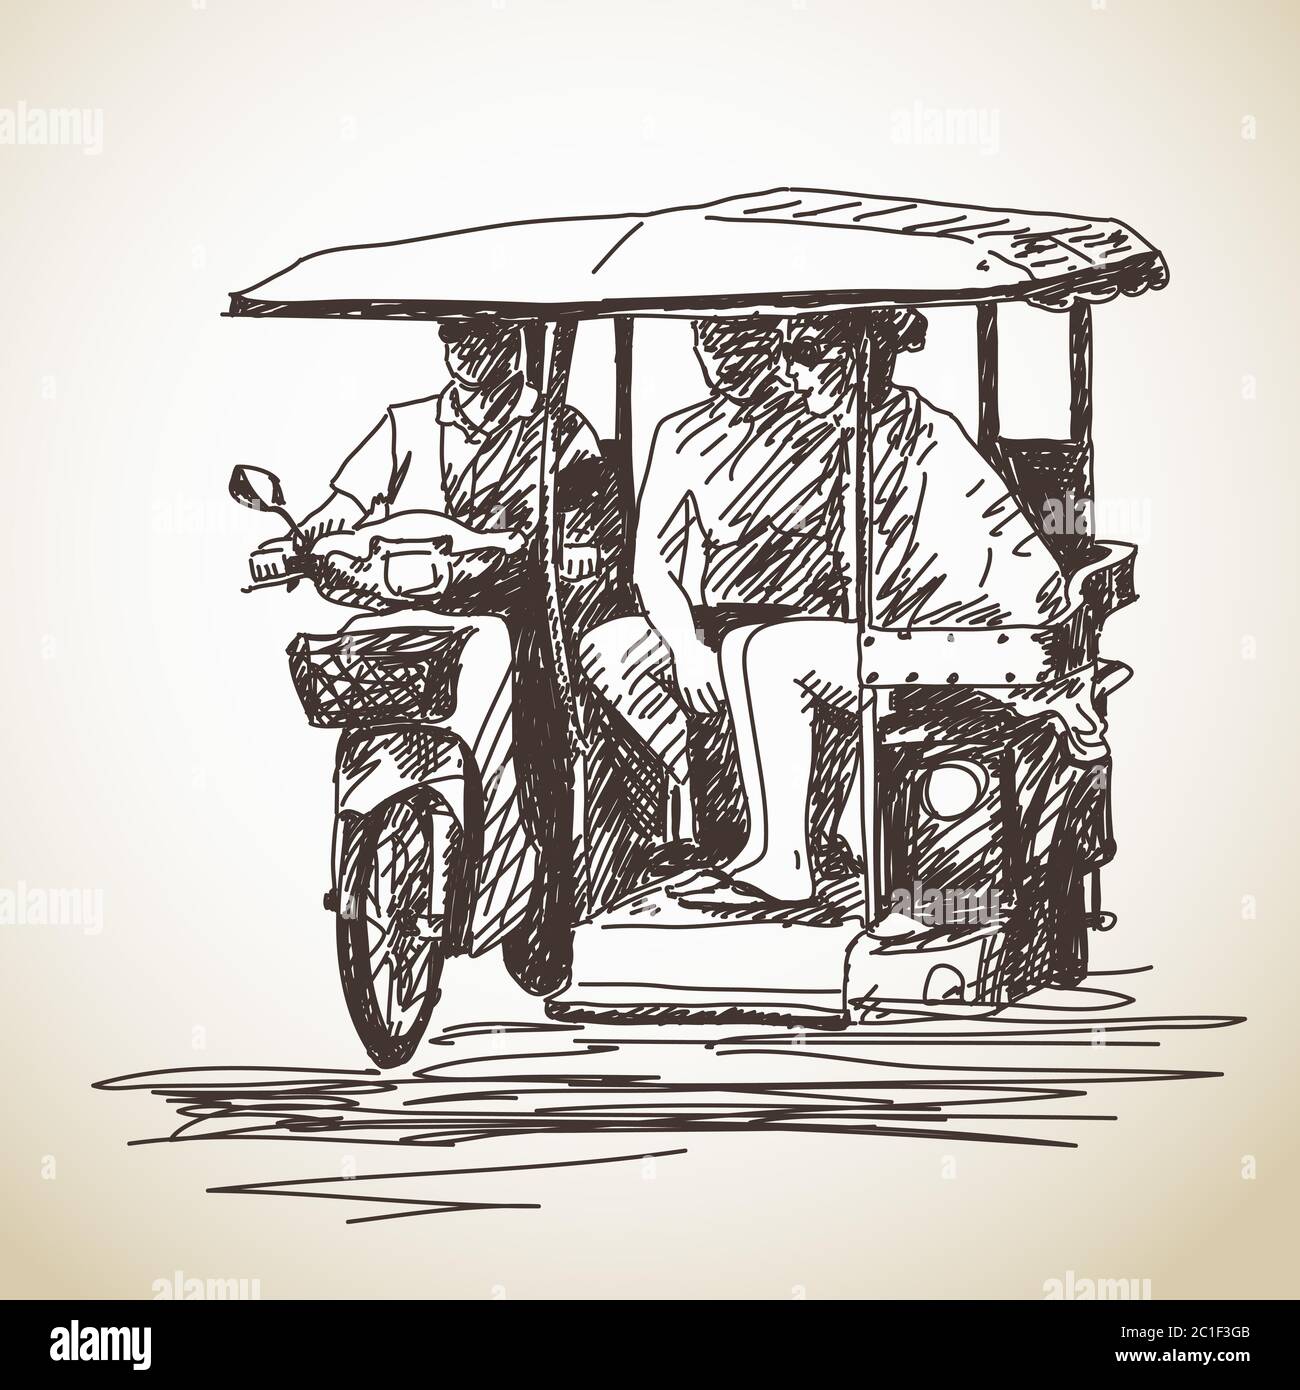 Skizze des Dreirad Moto Taxi mit touristischen handgezeichneten Vektor-Illustration Stock Vektor